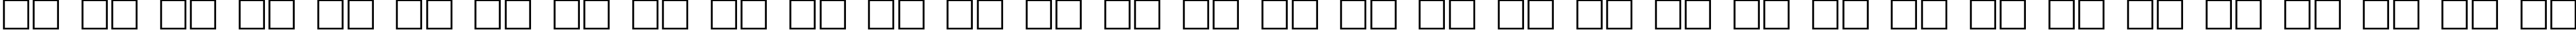 Пример написания русского алфавита шрифтом Adonais Regular